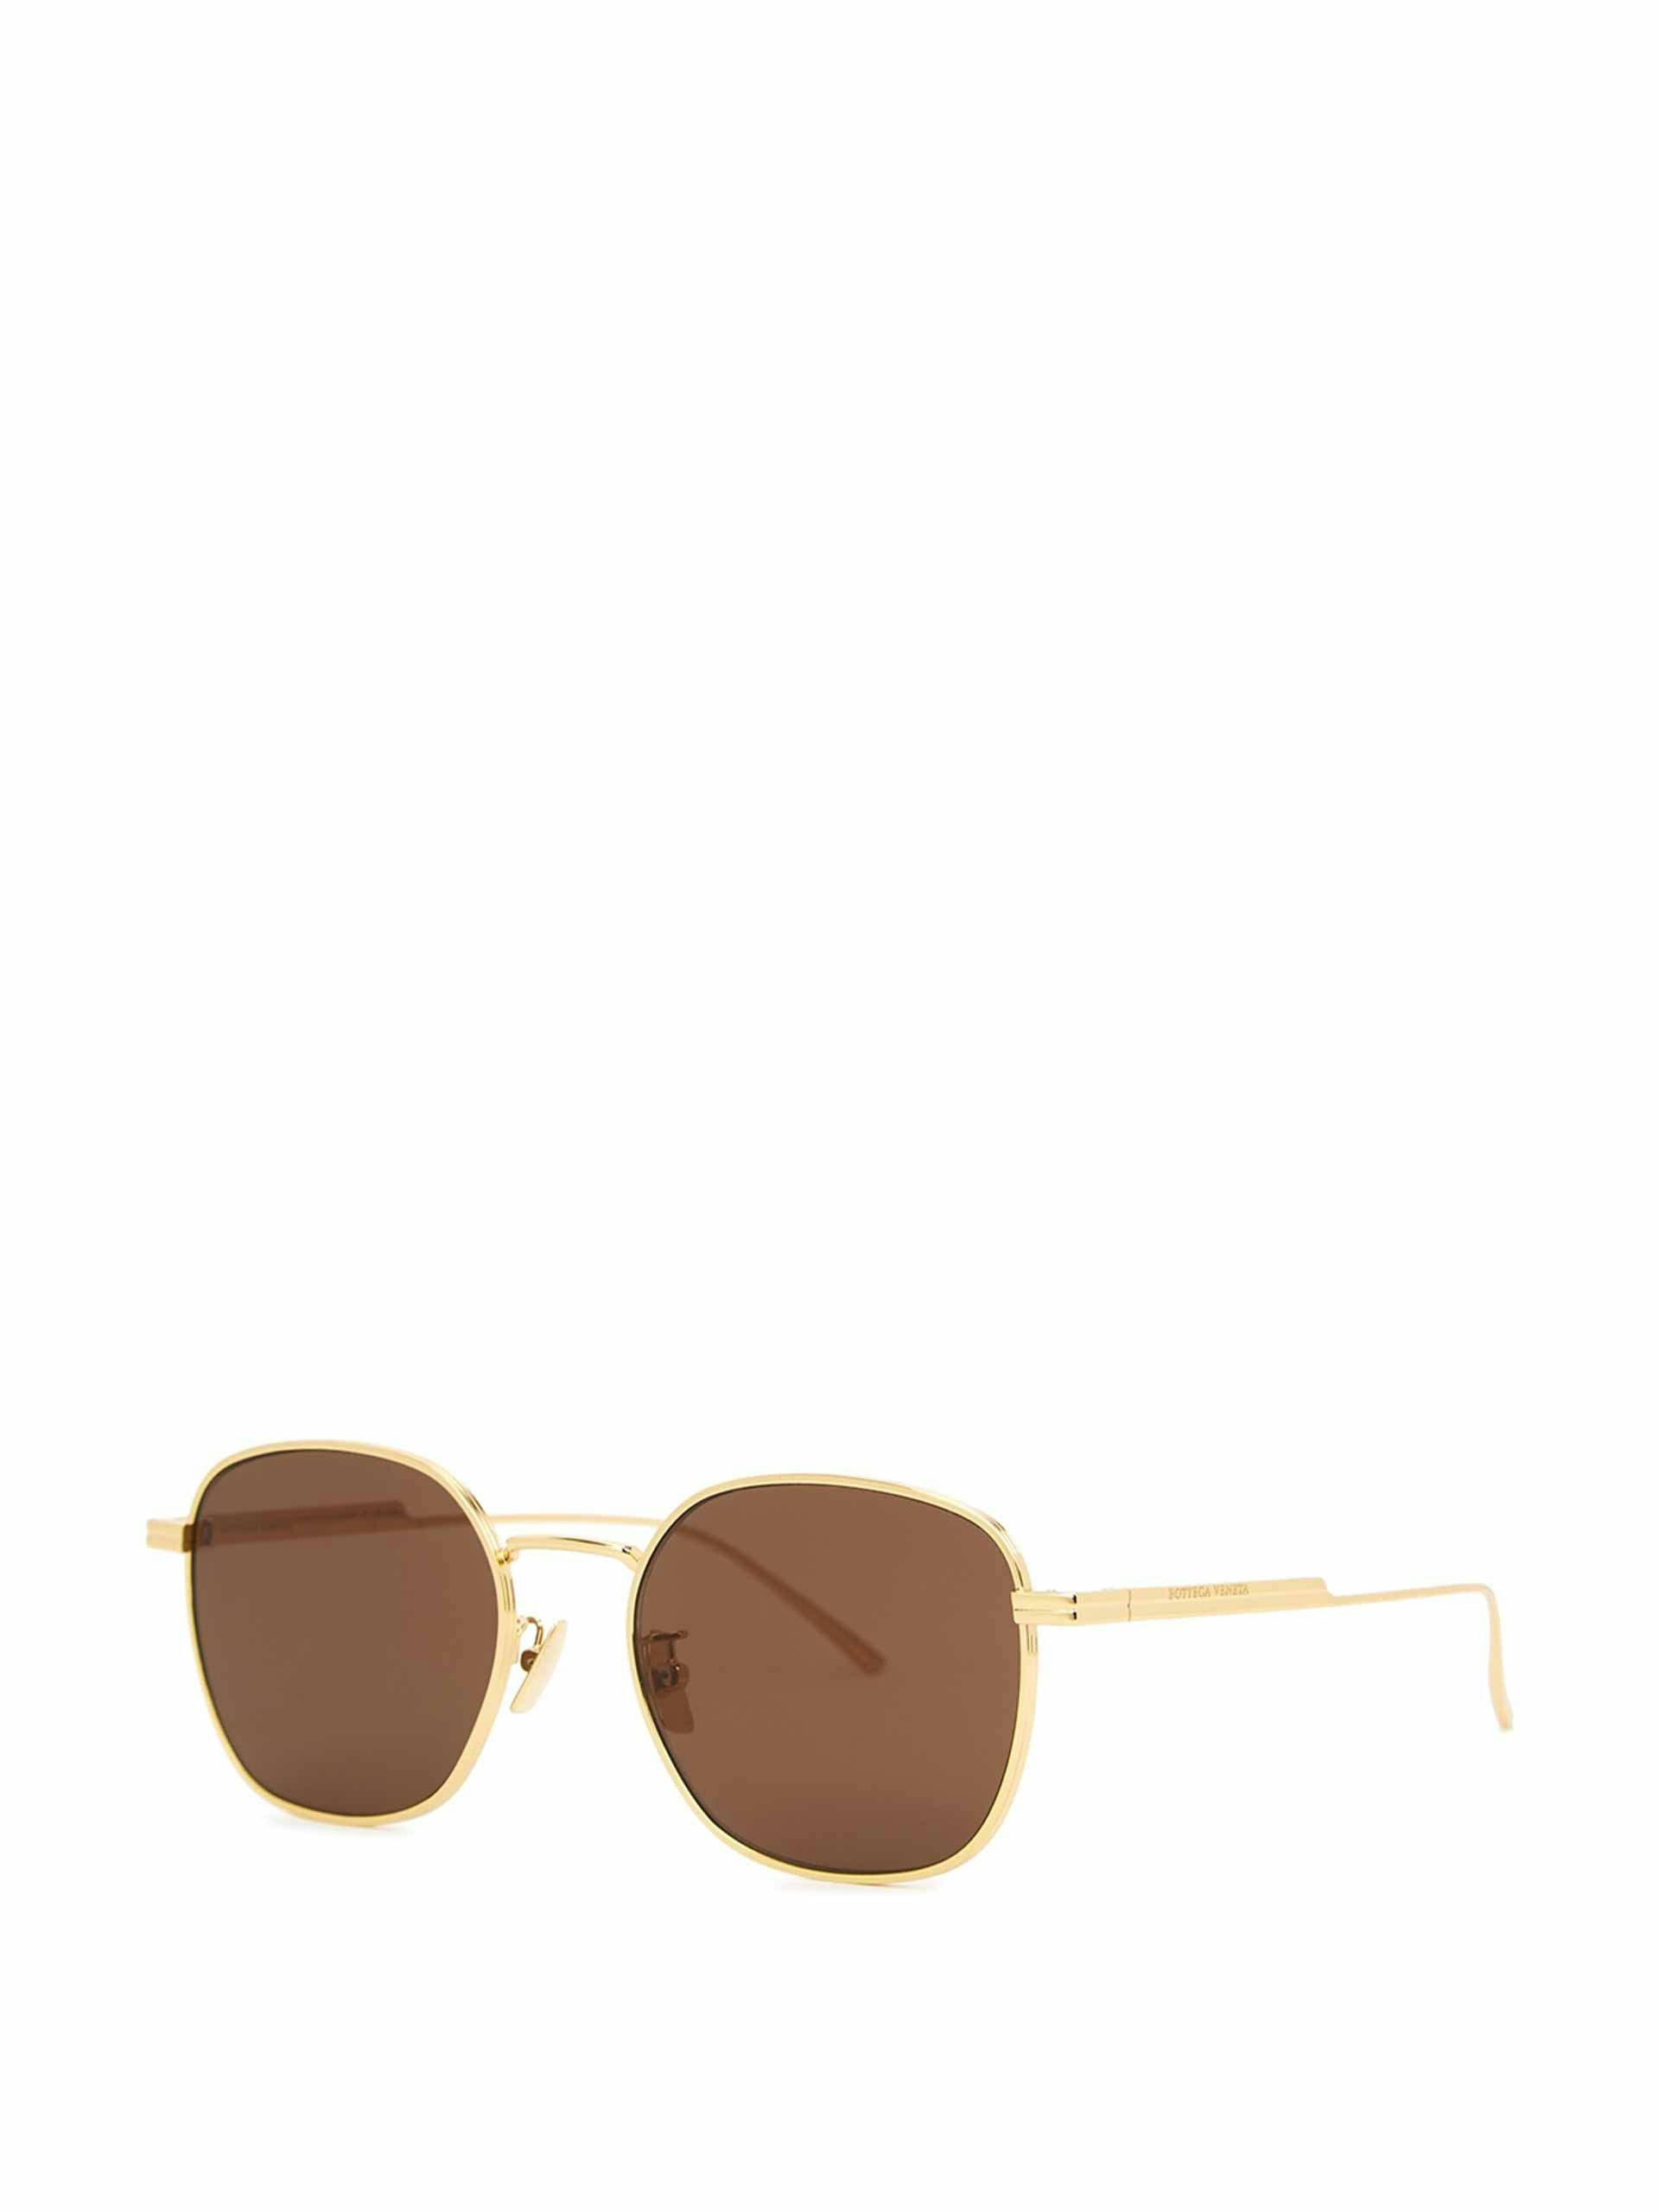 Gold-tone oval-frame sunglasses